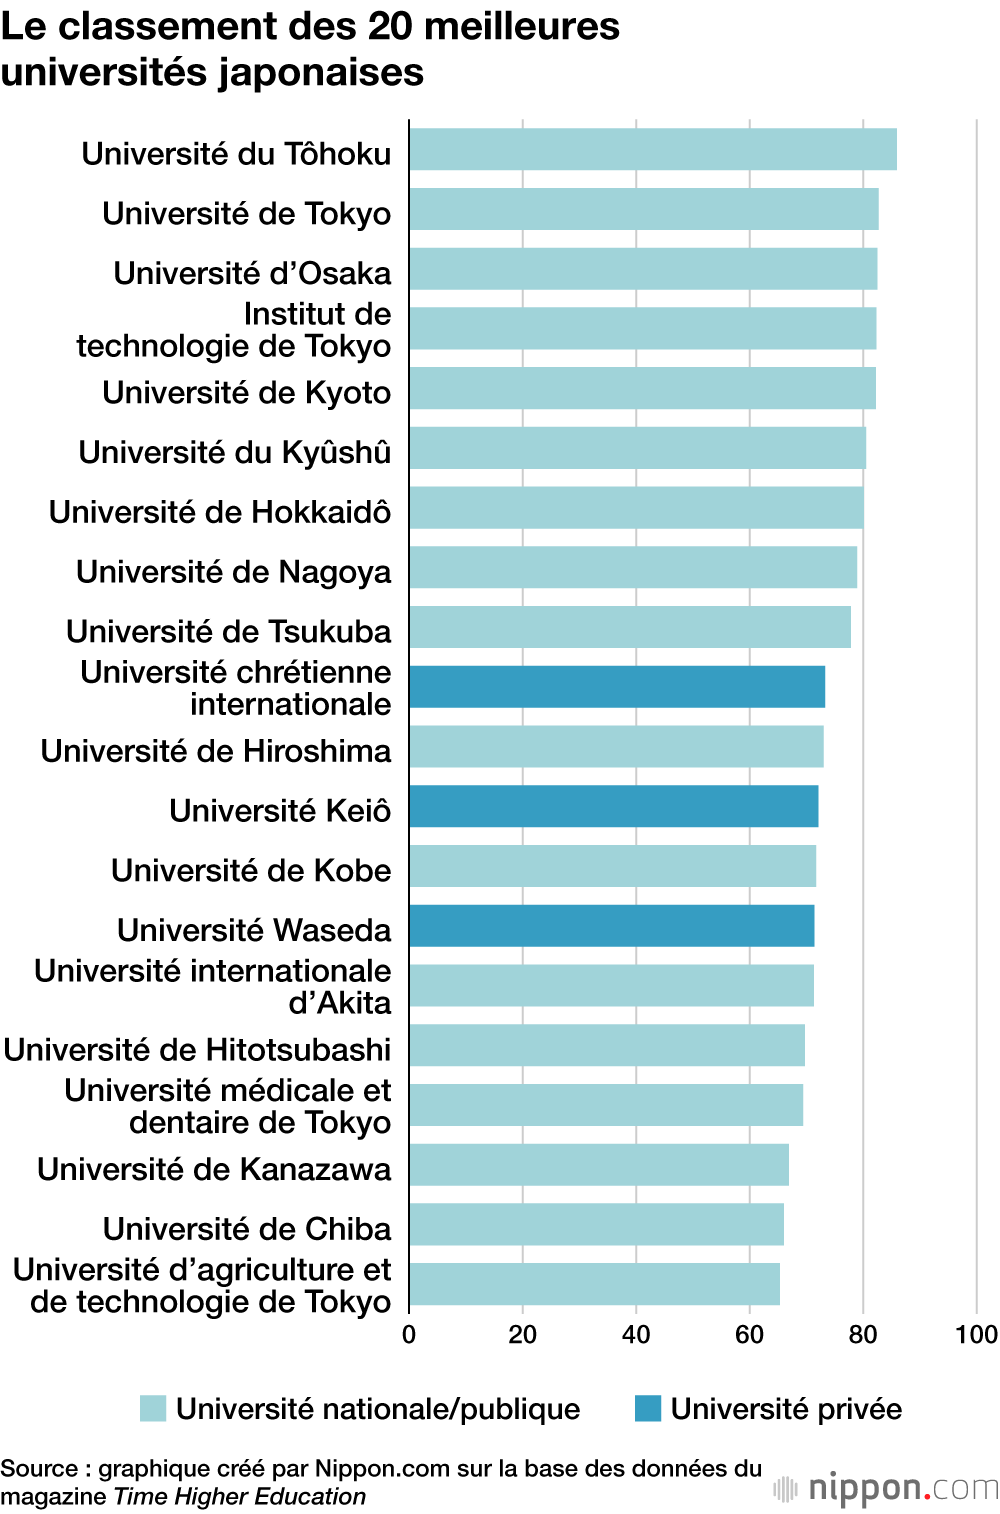 Le classement des 20 meilleures universités japonaises